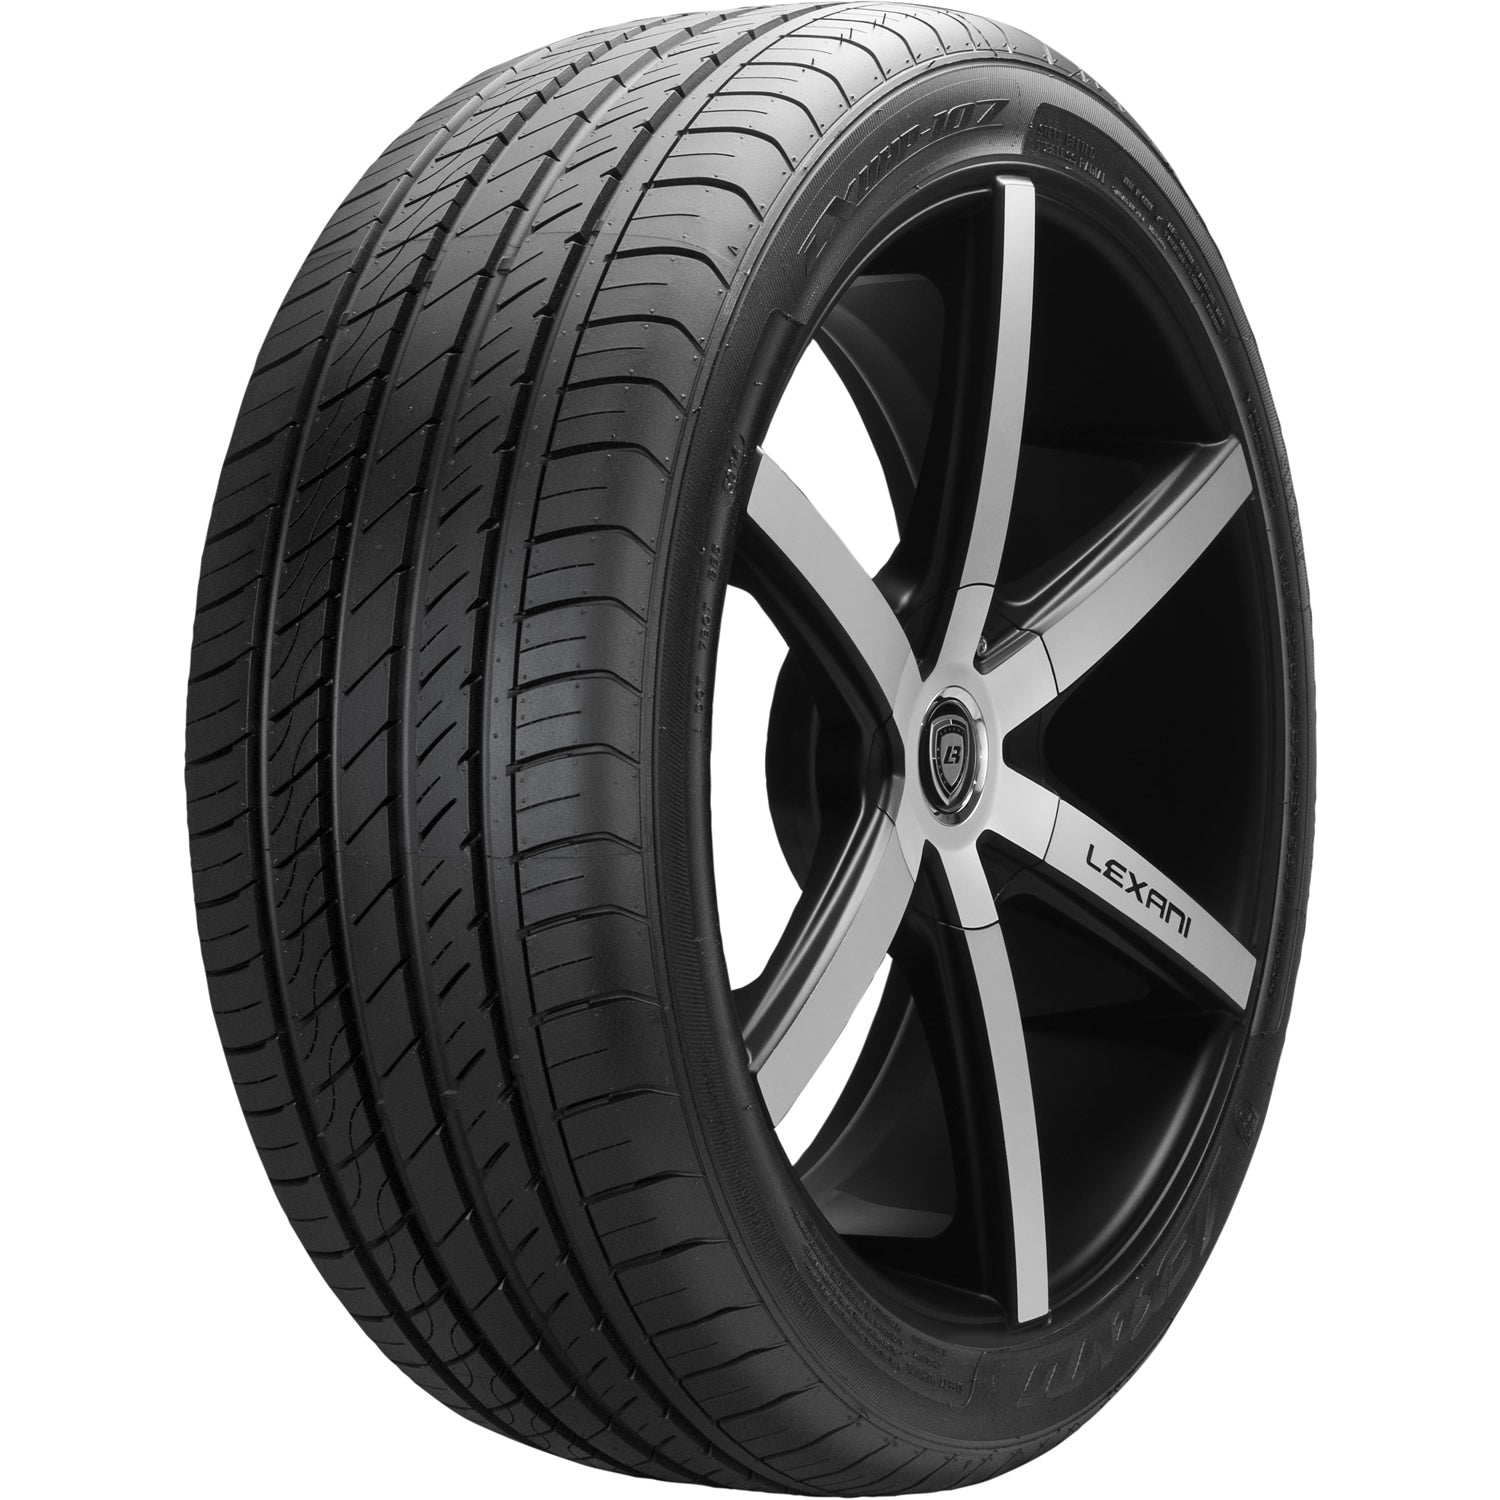 LEXANI LXUHP-107 235/50R18 (27.3X9.7R 18) Tires